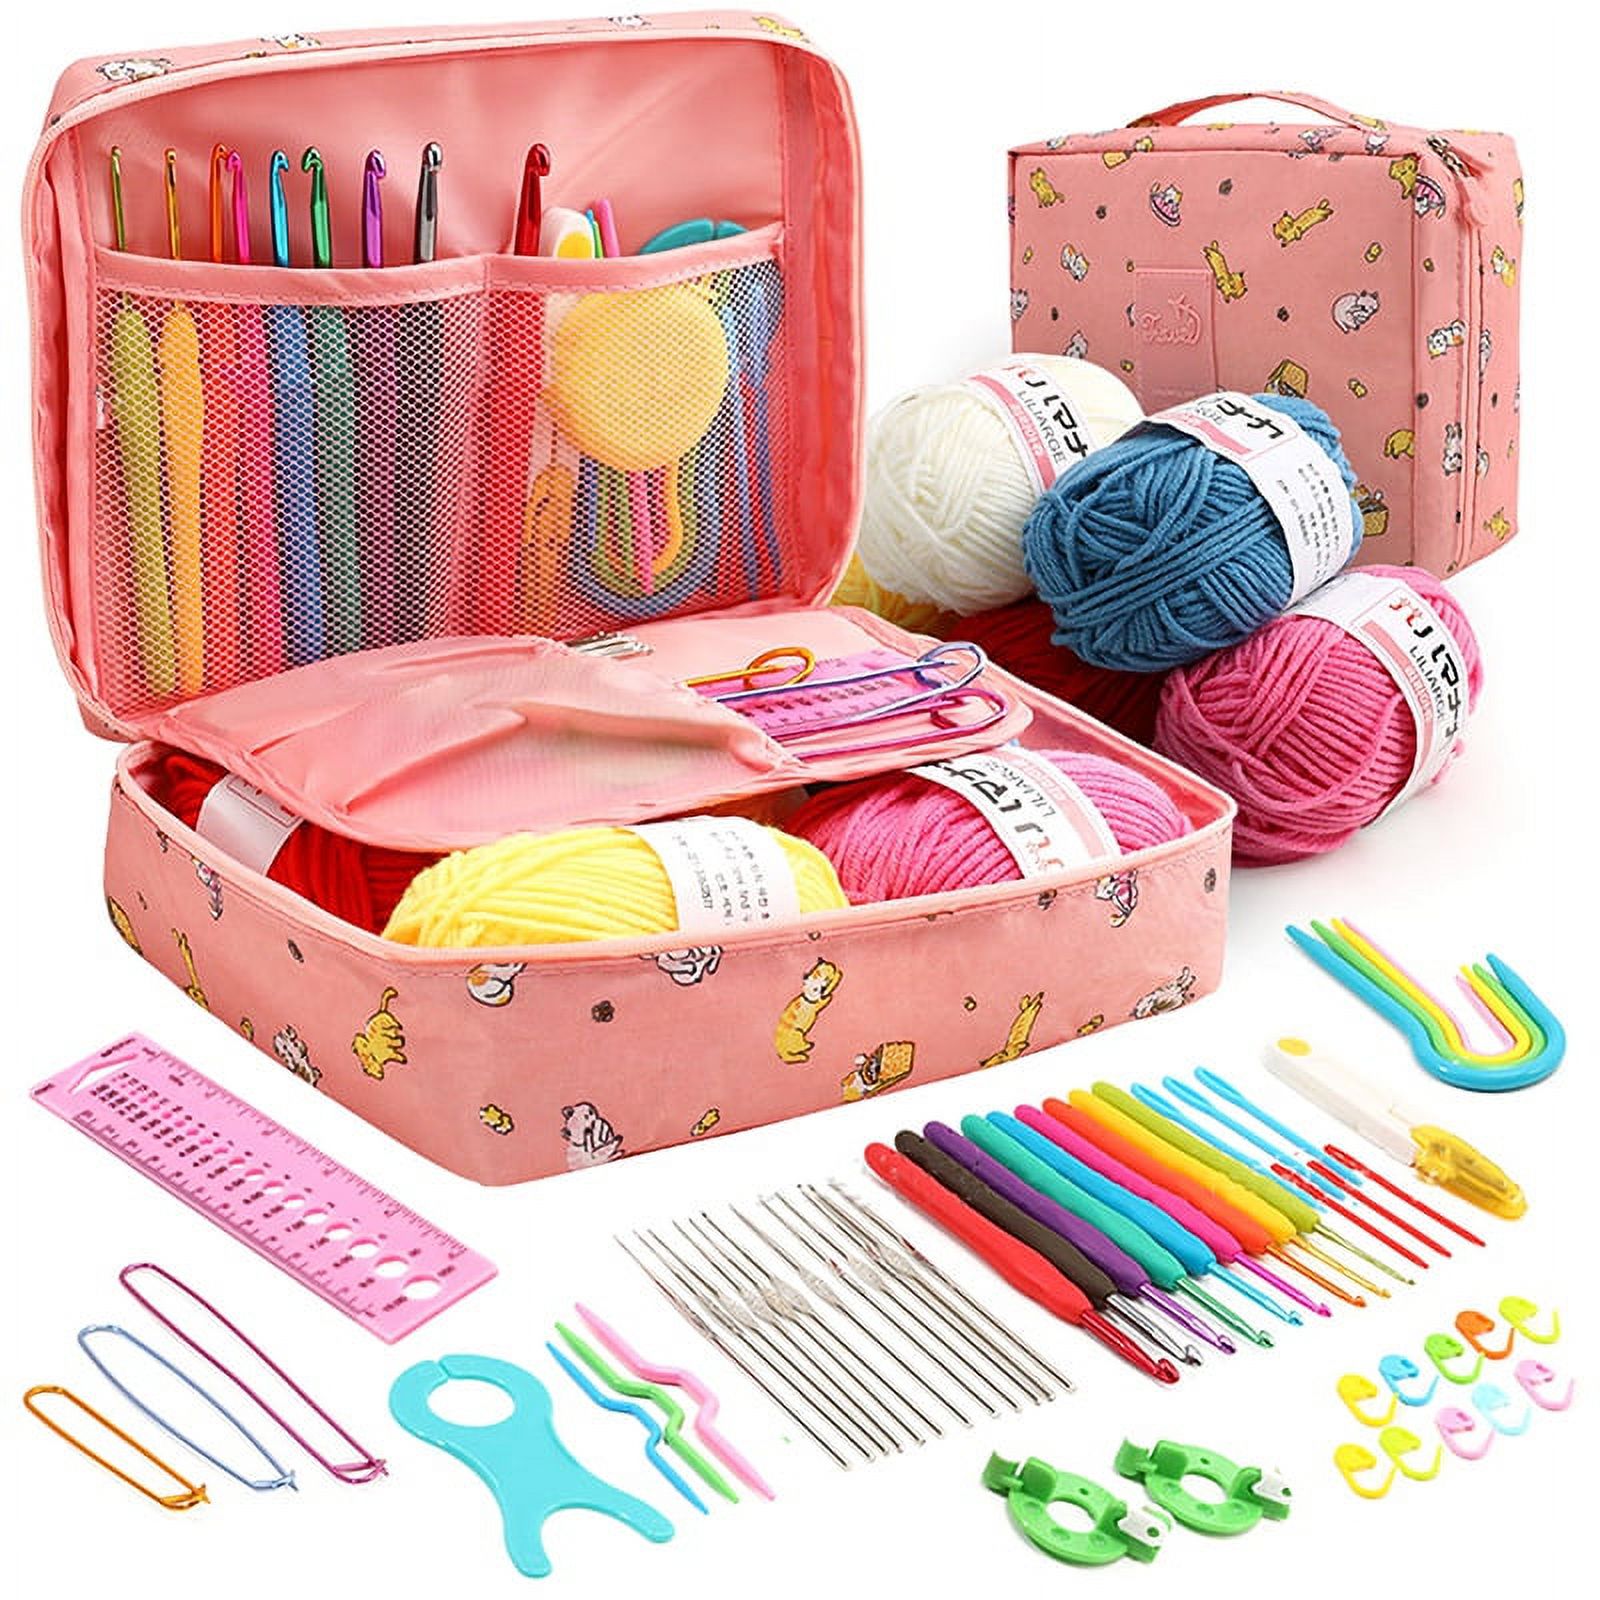 Draggmepartty Beginner Crochet Kit, Learn to Crochet Starter Kit for Adults and Kids Complete Crochet Kit, Pink